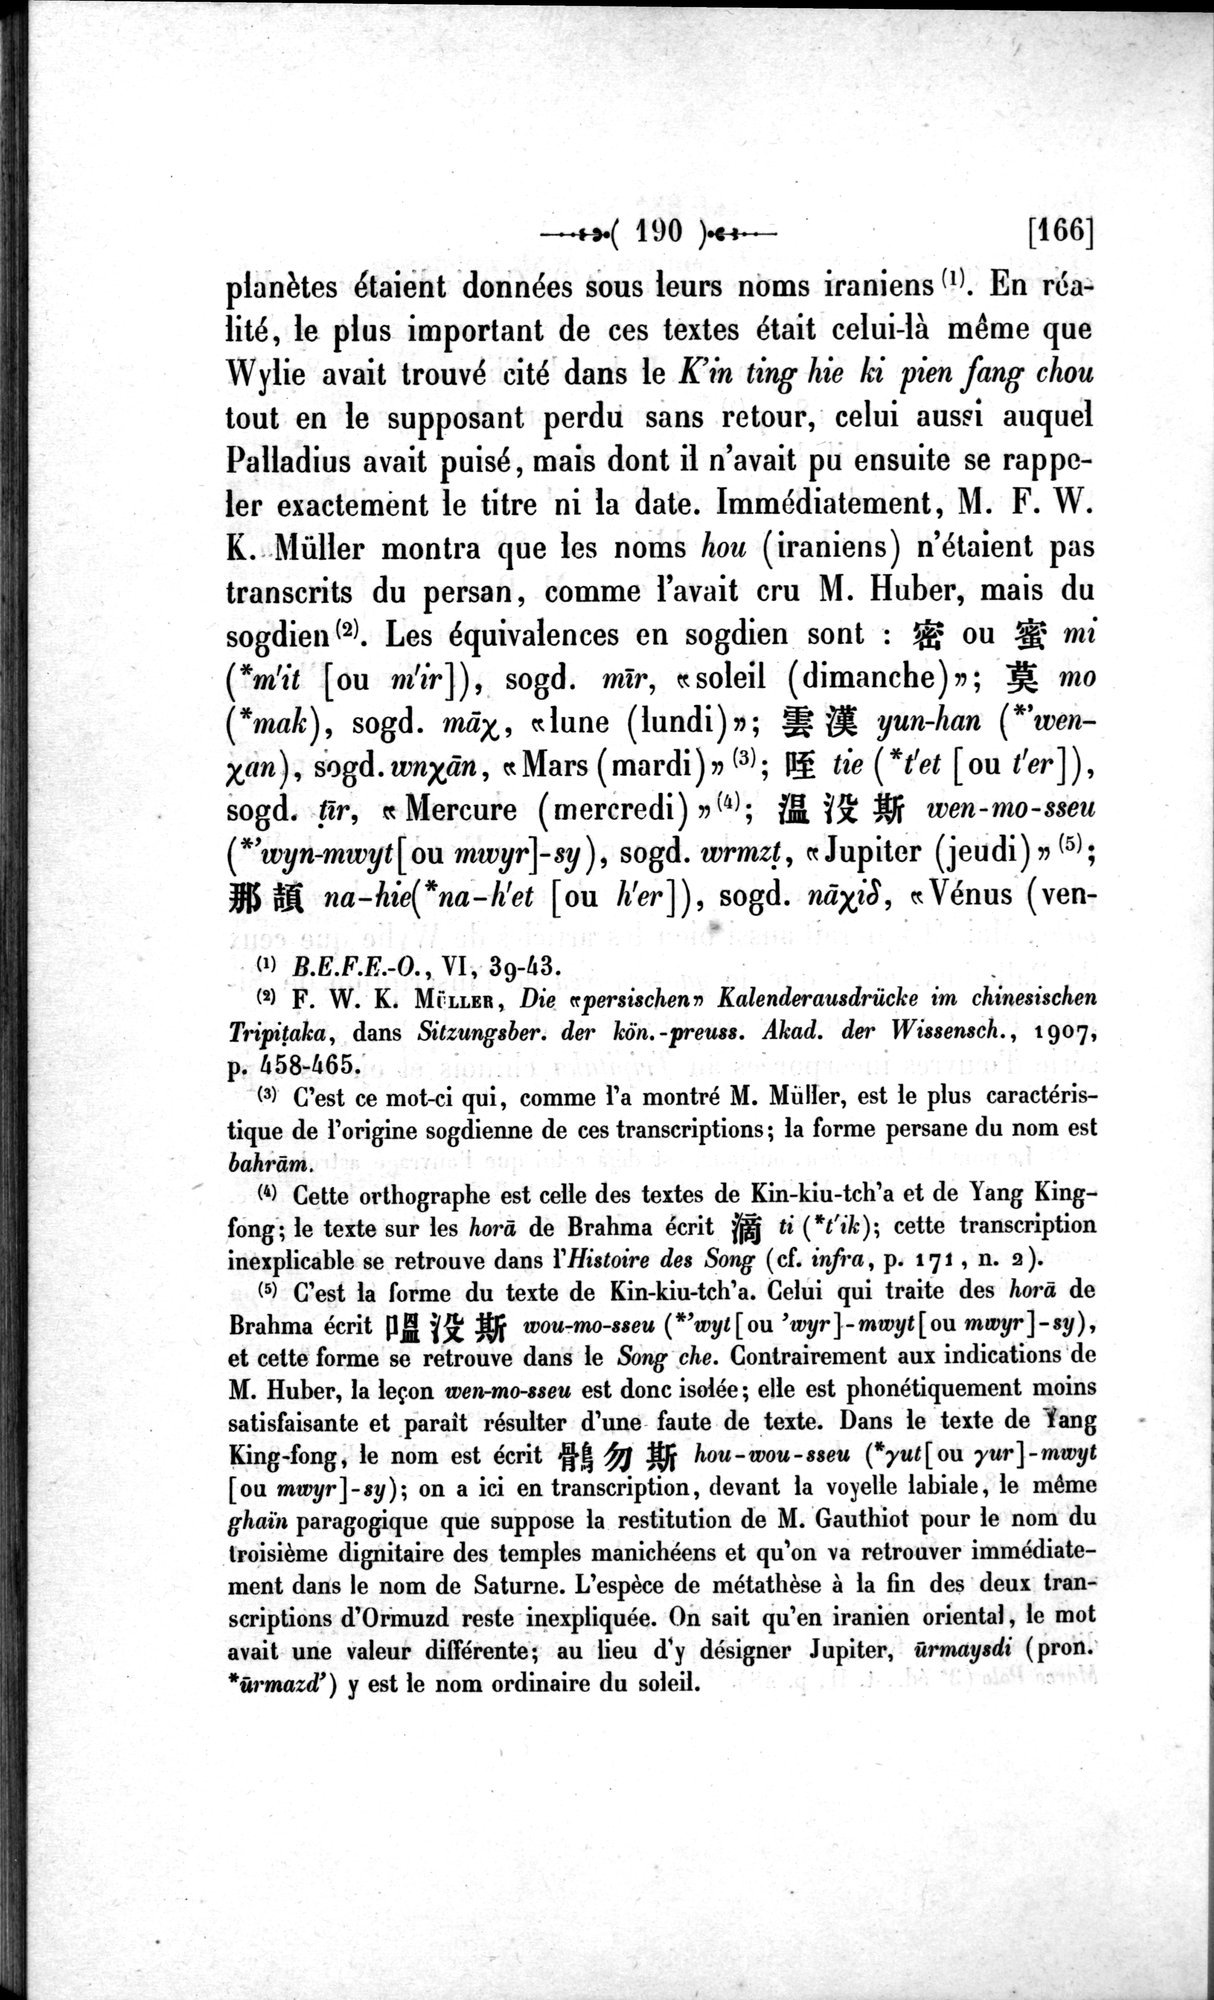 Un traité manichéen retrouvé en Chine : vol.1 / Page 200 (Grayscale High Resolution Image)